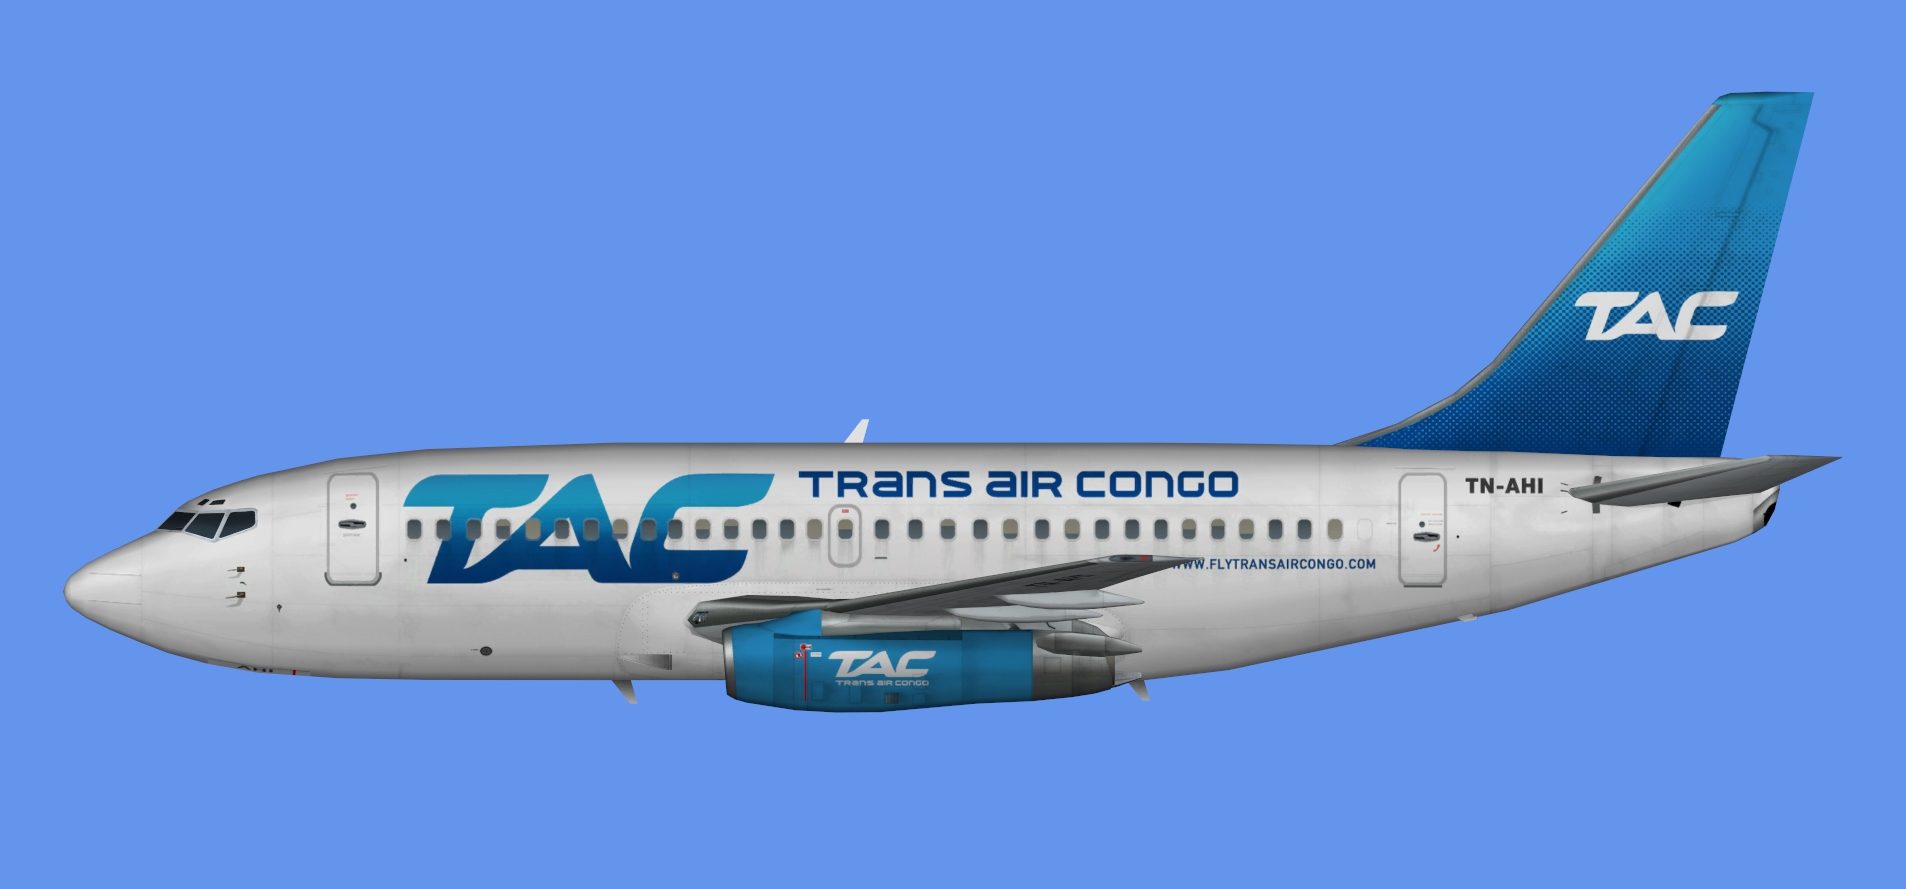 Trans Air Congo Boeing 737-200